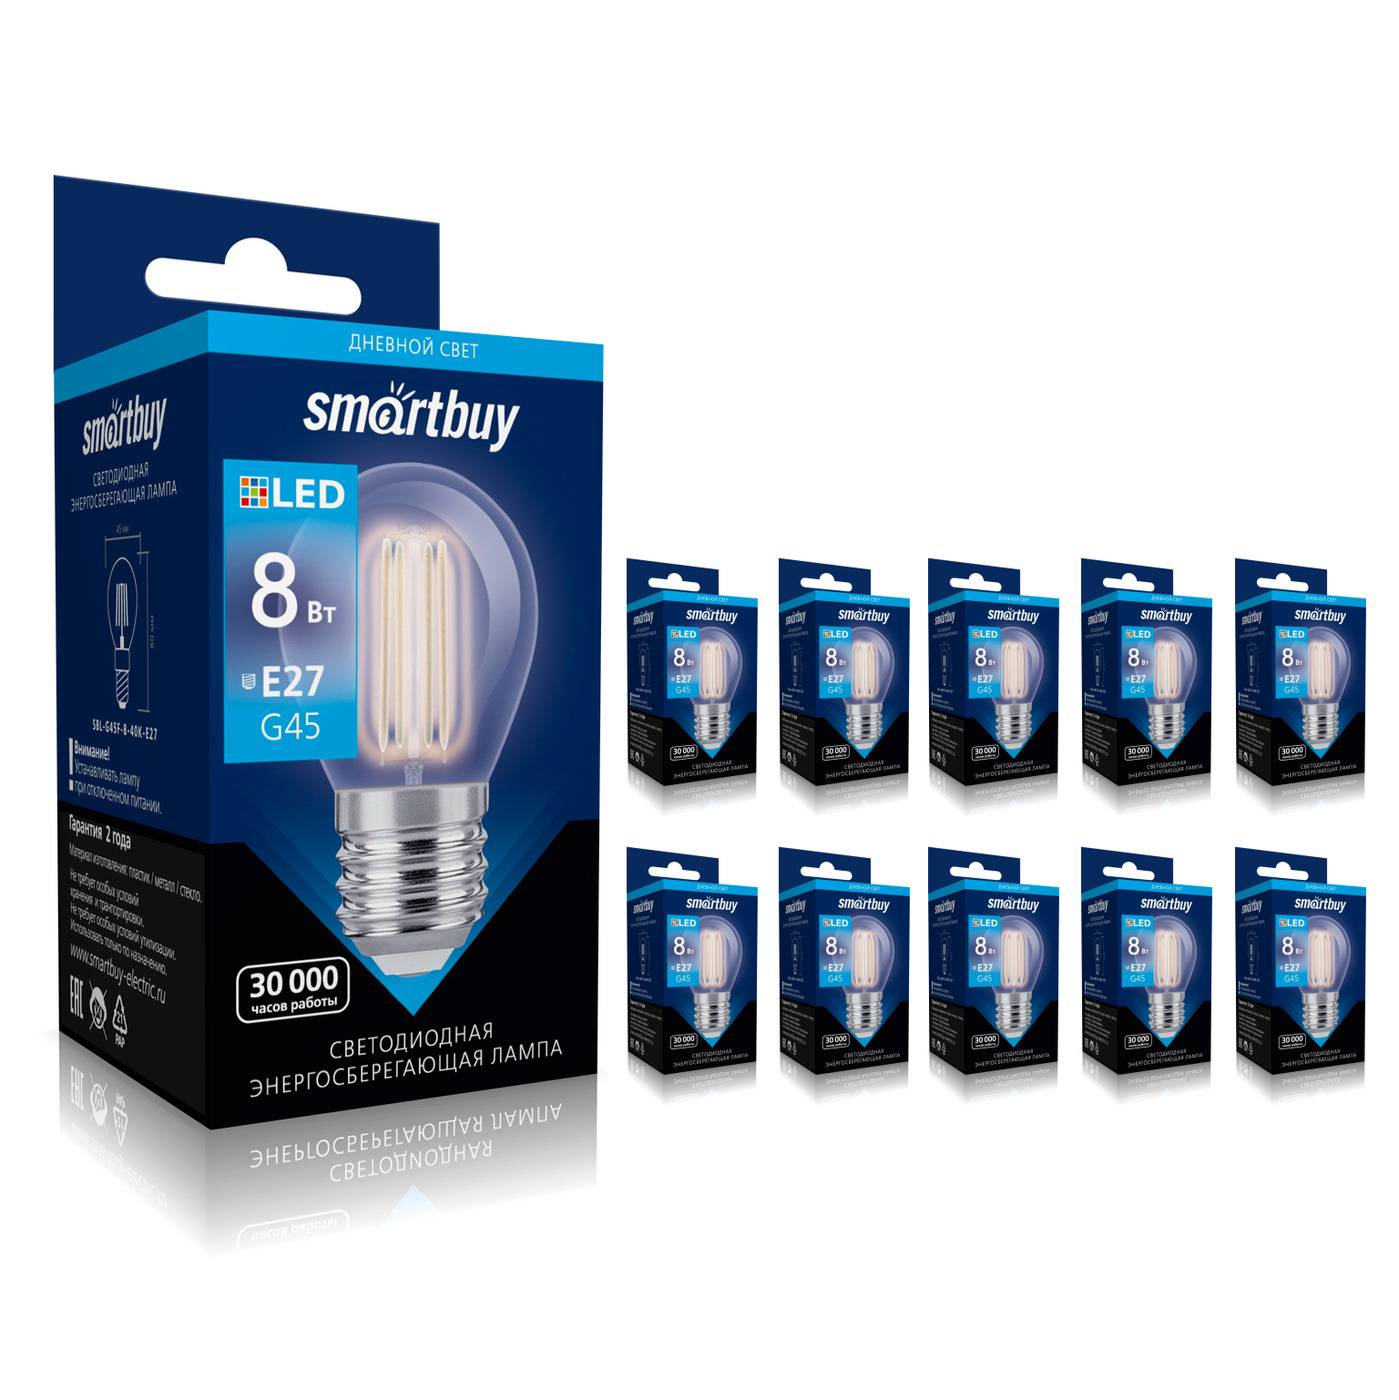 Smartbuy — производители светодиодных ламп